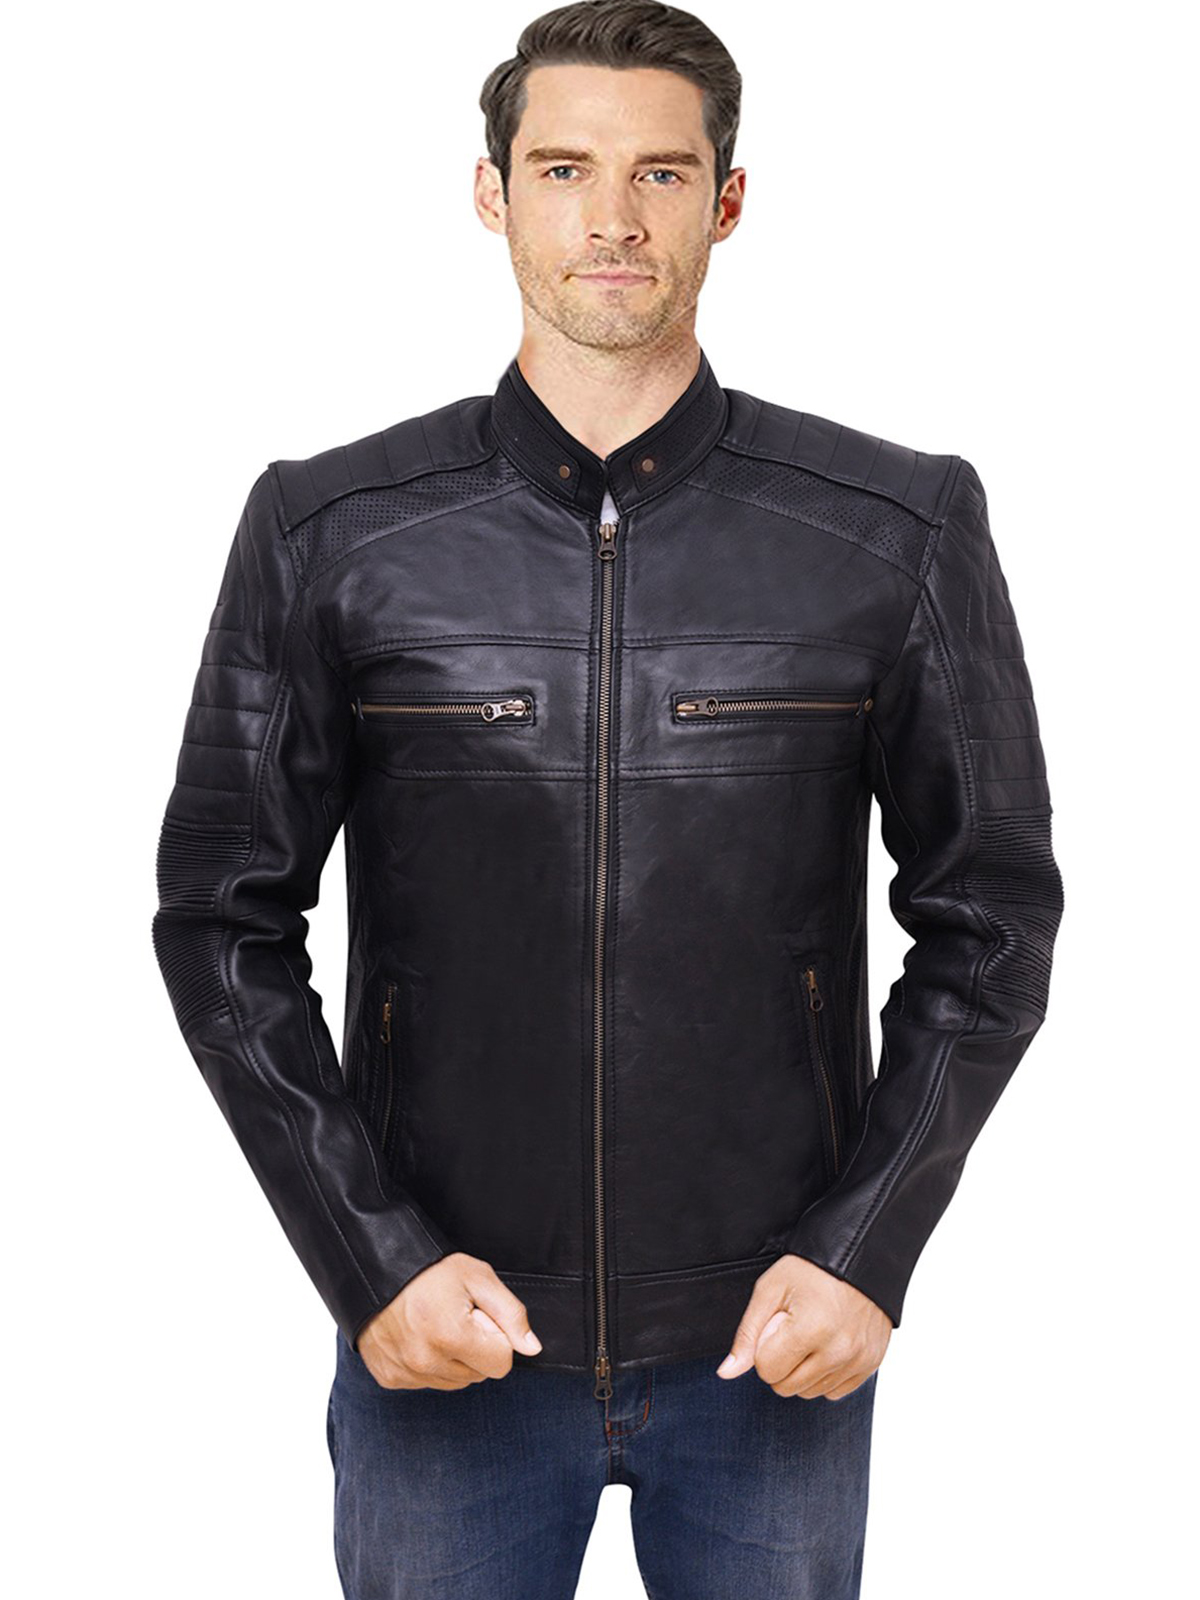 Cafe Racer Biker Leather Jacket